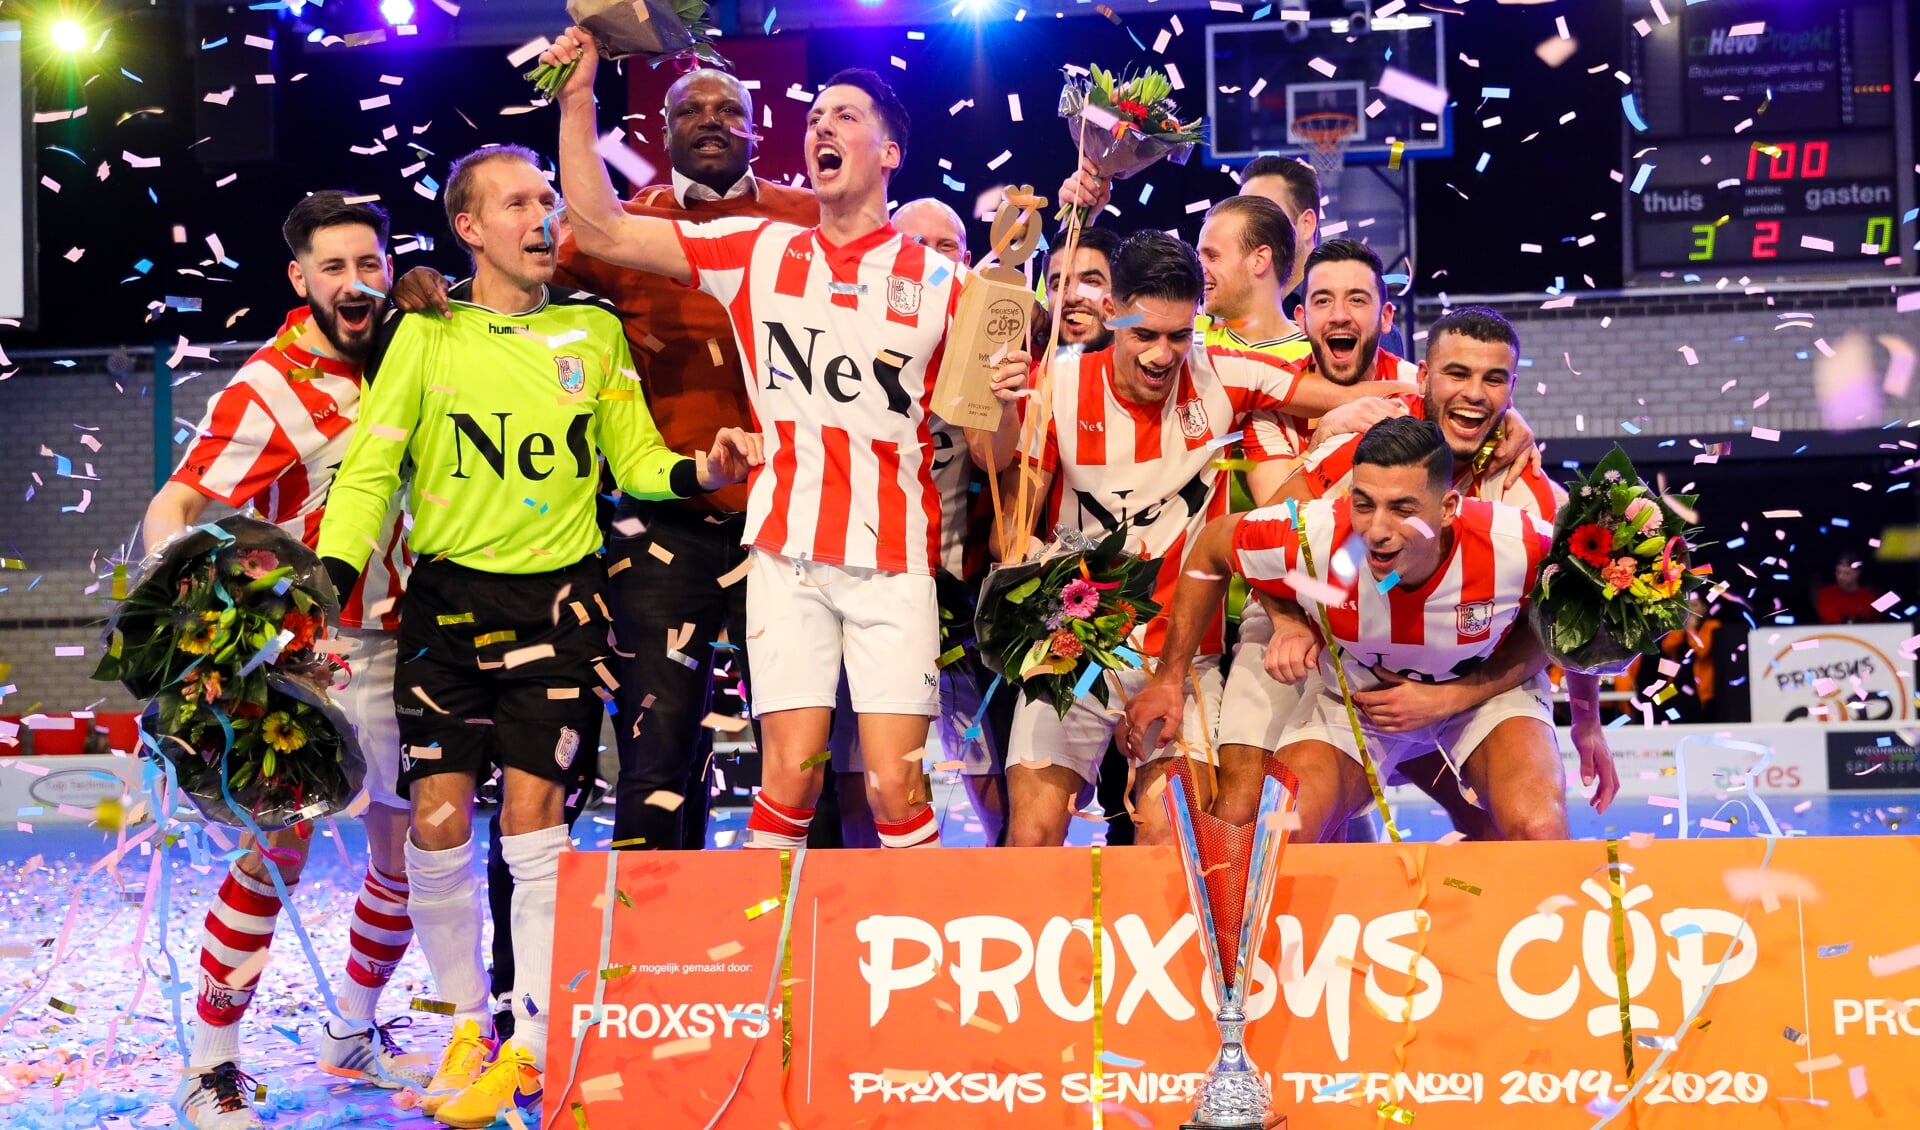 • SVW wint de Proxsys Cup 2019-2020.